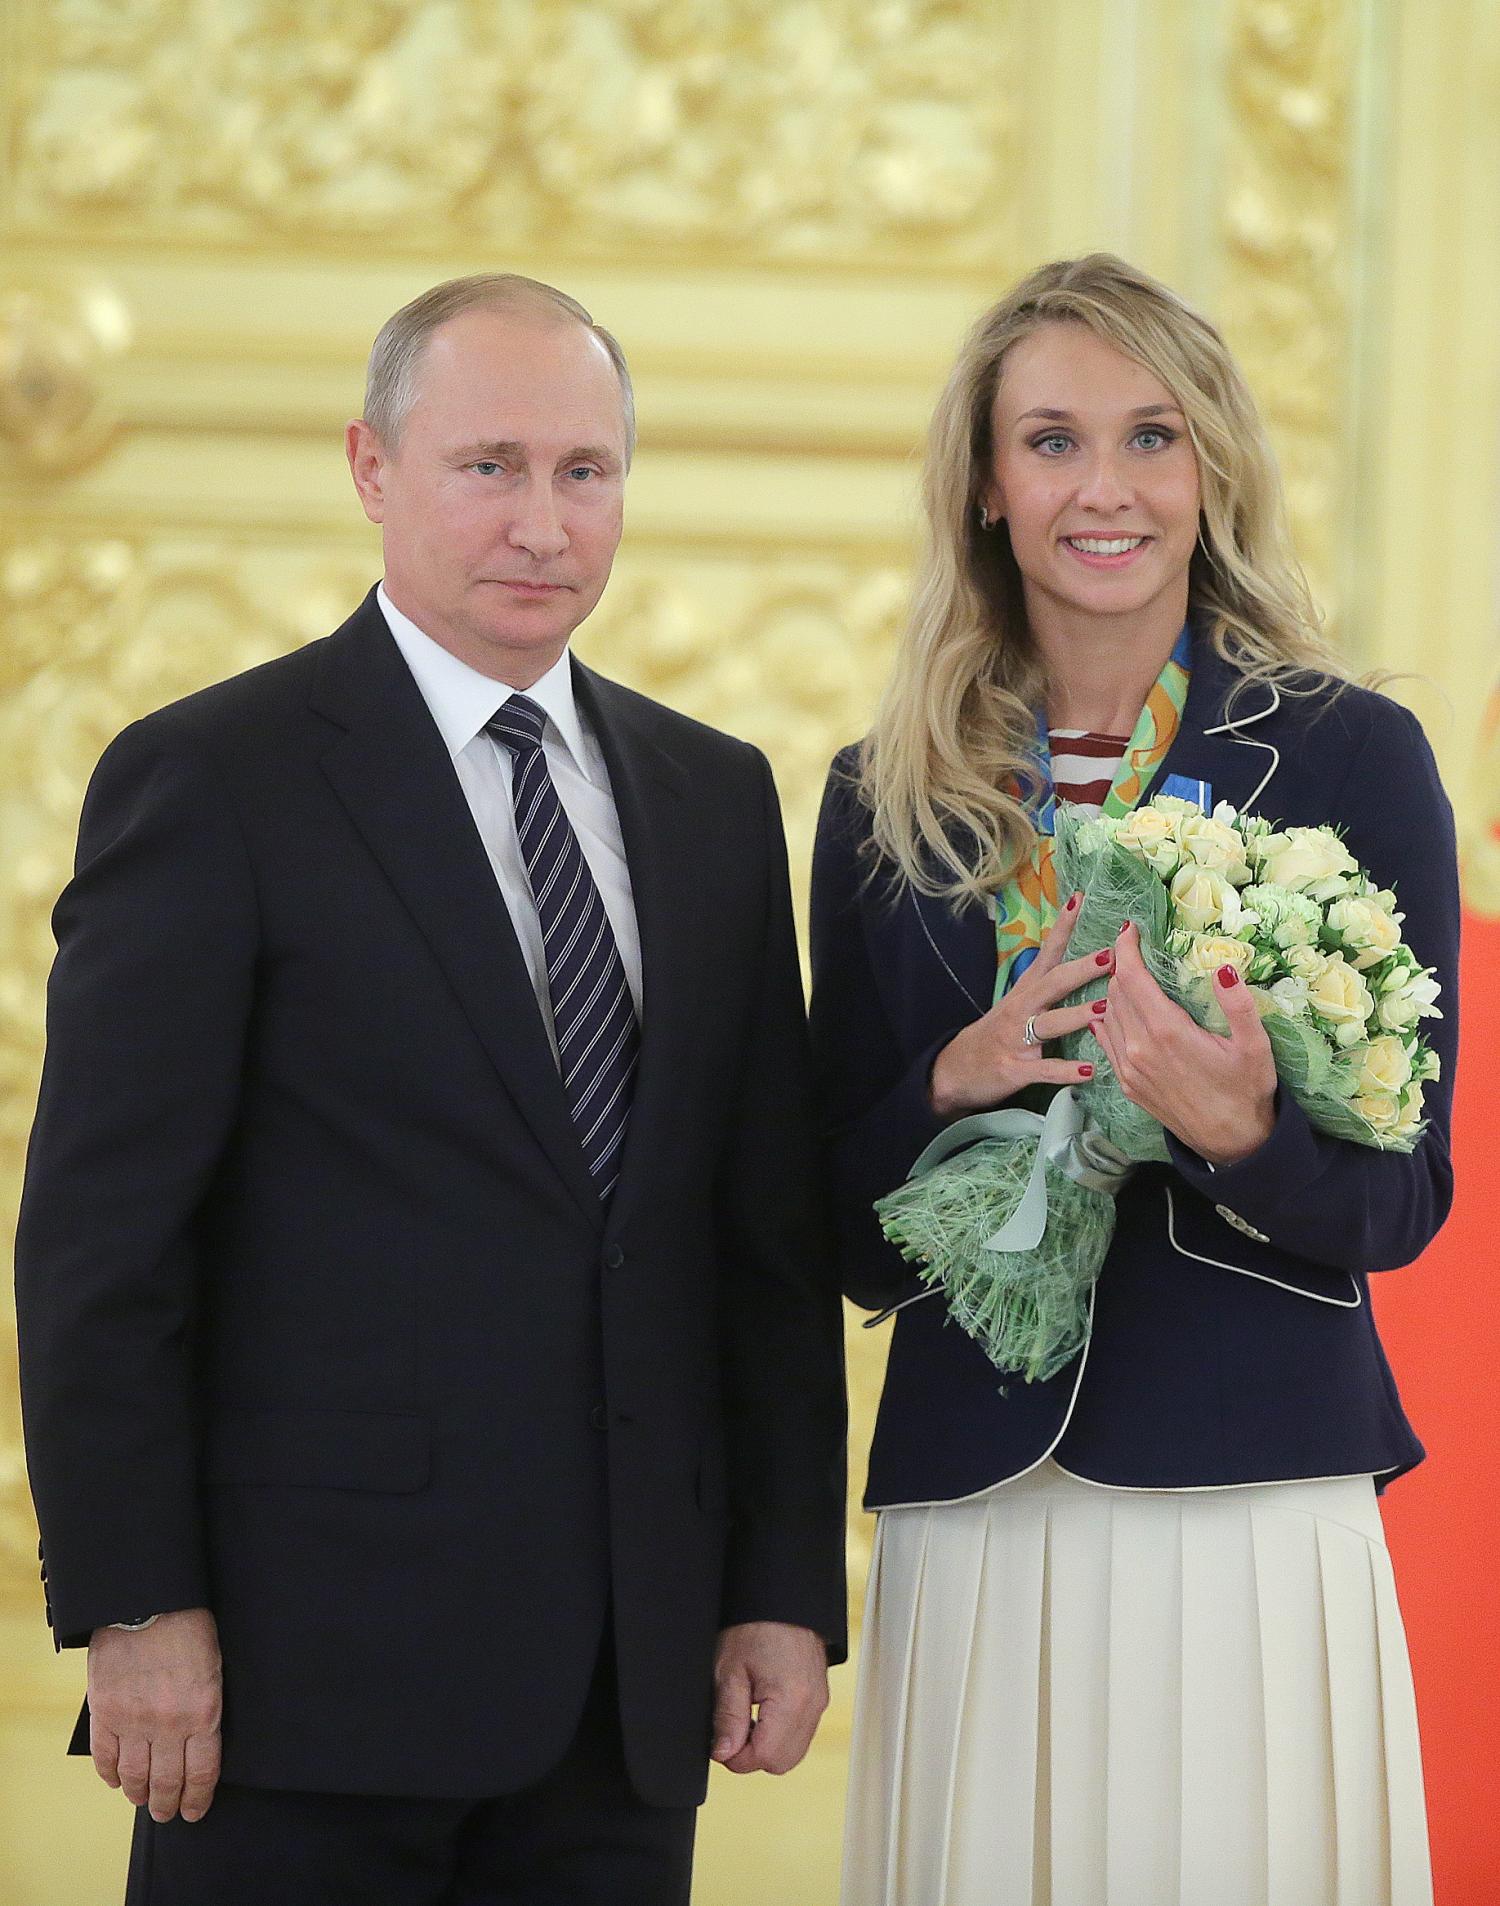 Женщина рядом с Путиным